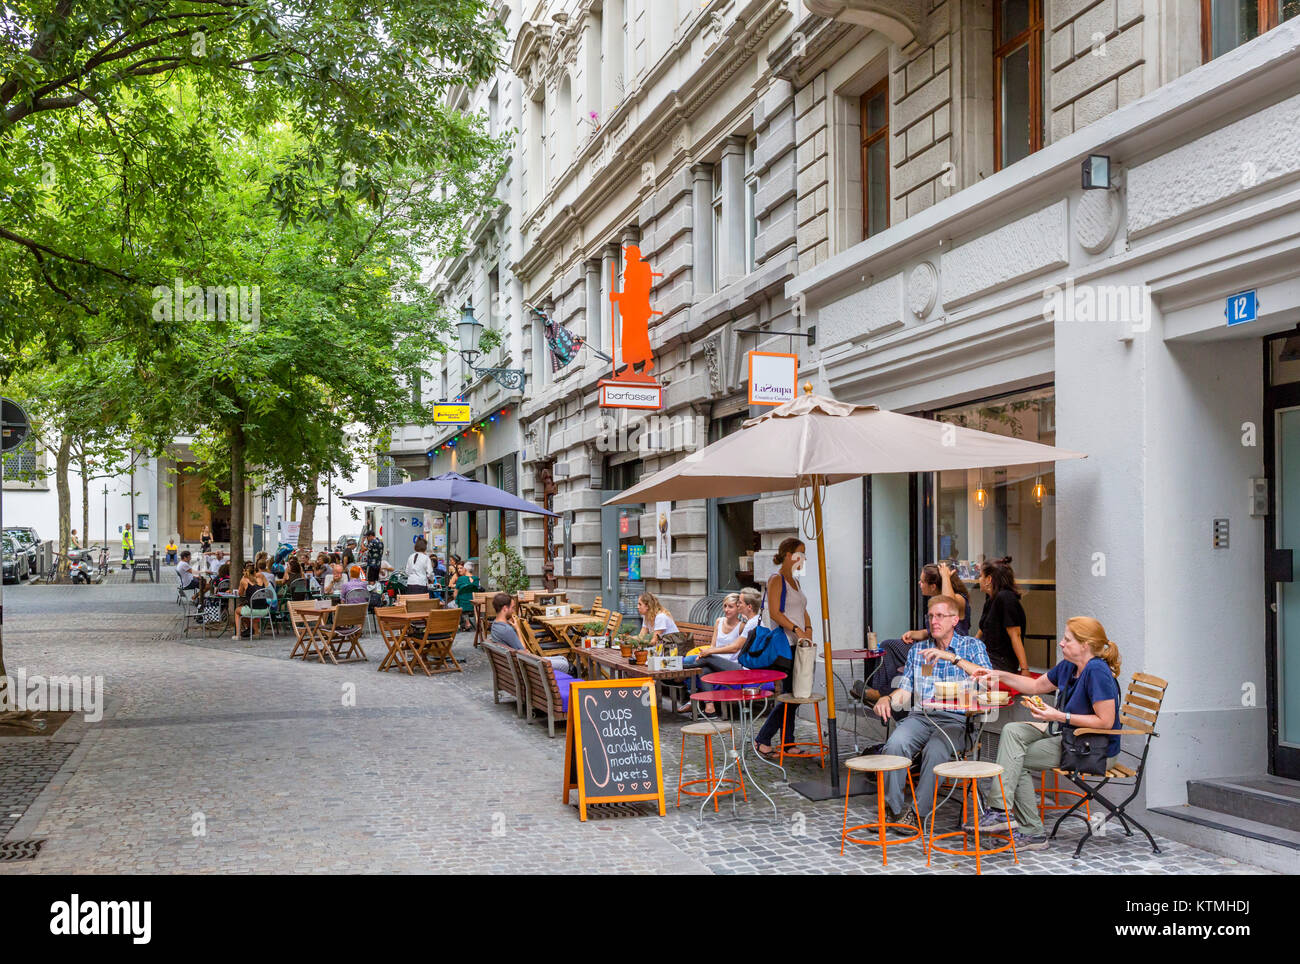 Cafes on Spitalgasse in the historic Niederdorf district, Zurich, Switzerland Stock Photo